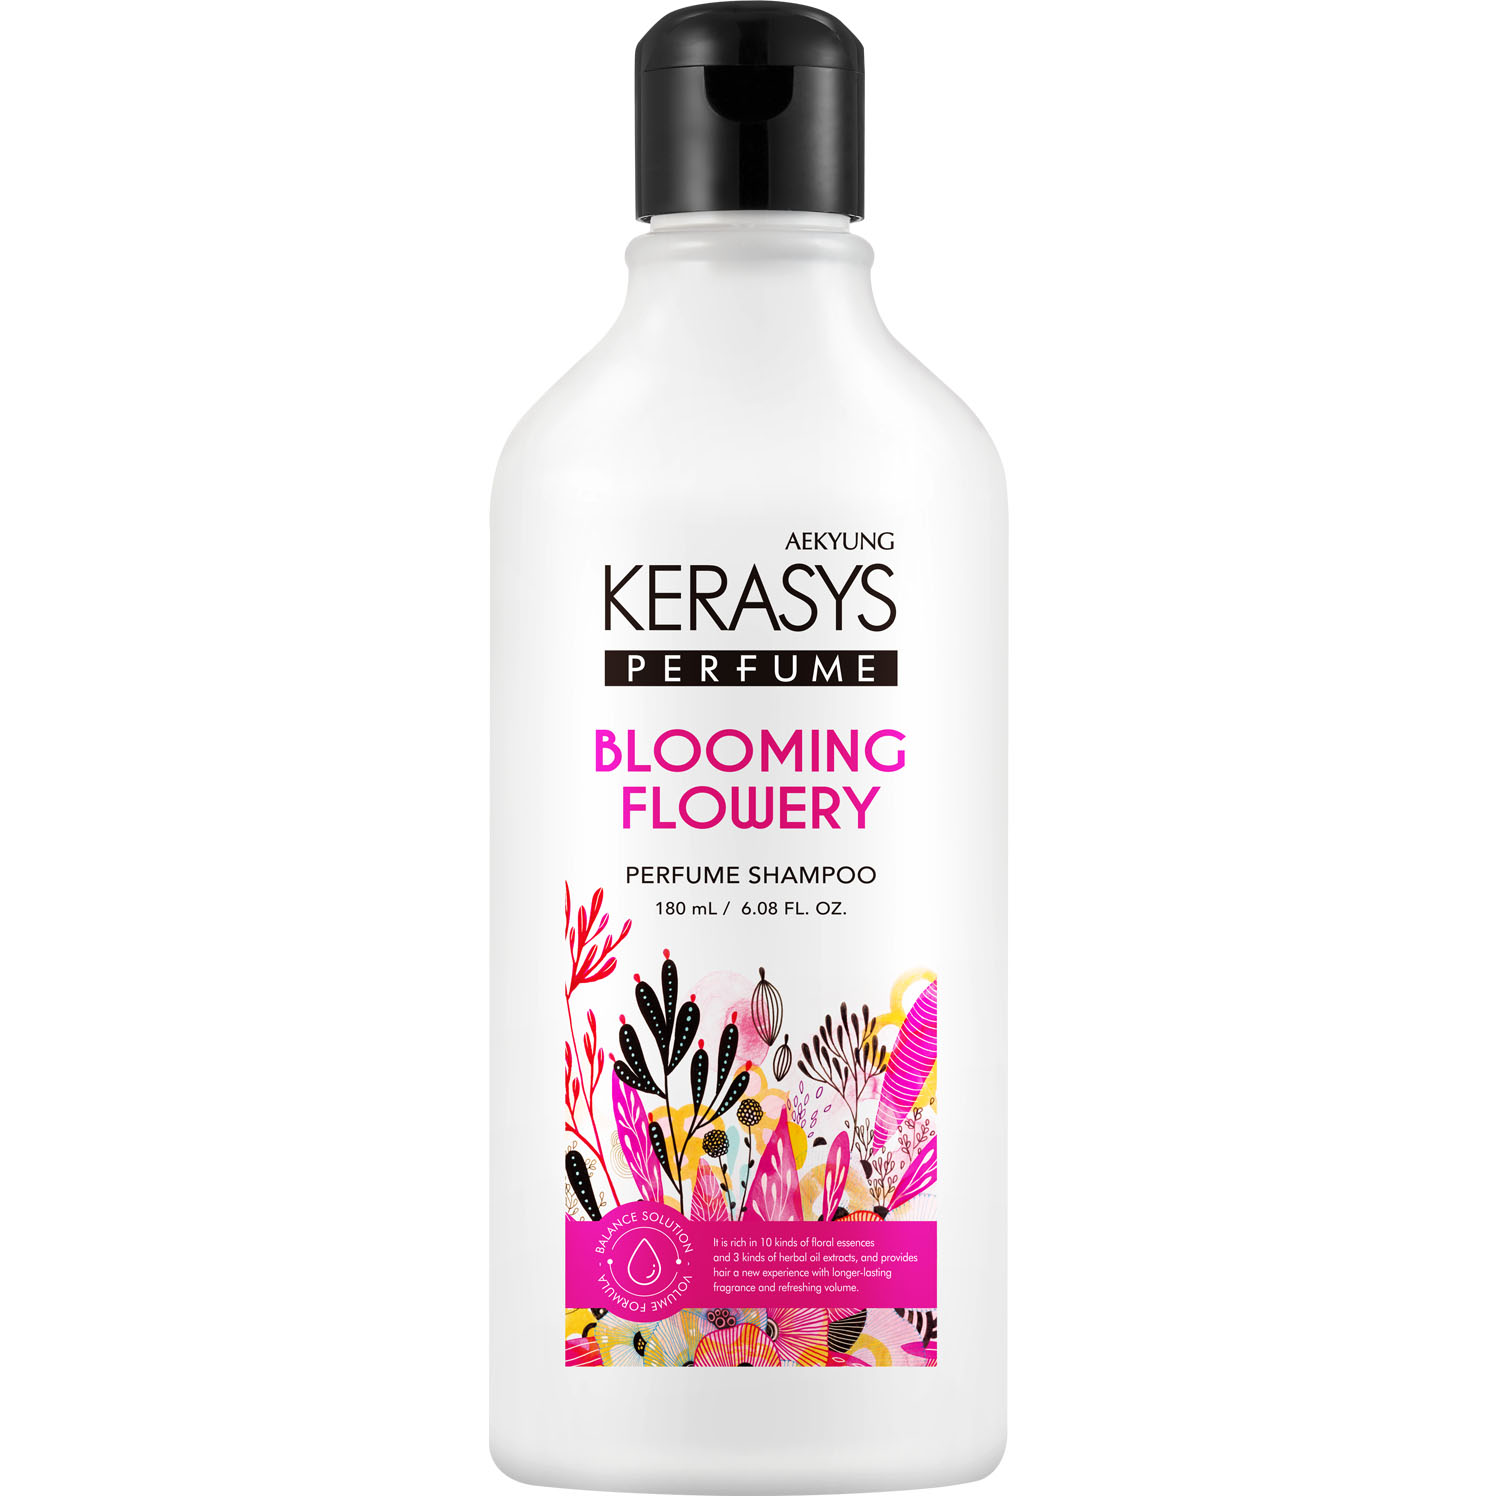 kerasys шампунь для всех типов волос blooming flowery 180 мл kerasys perfumed line Kerasys Шампунь для всех типов волос Blooming Flowery, 180 мл (Kerasys, Perfumed Line)